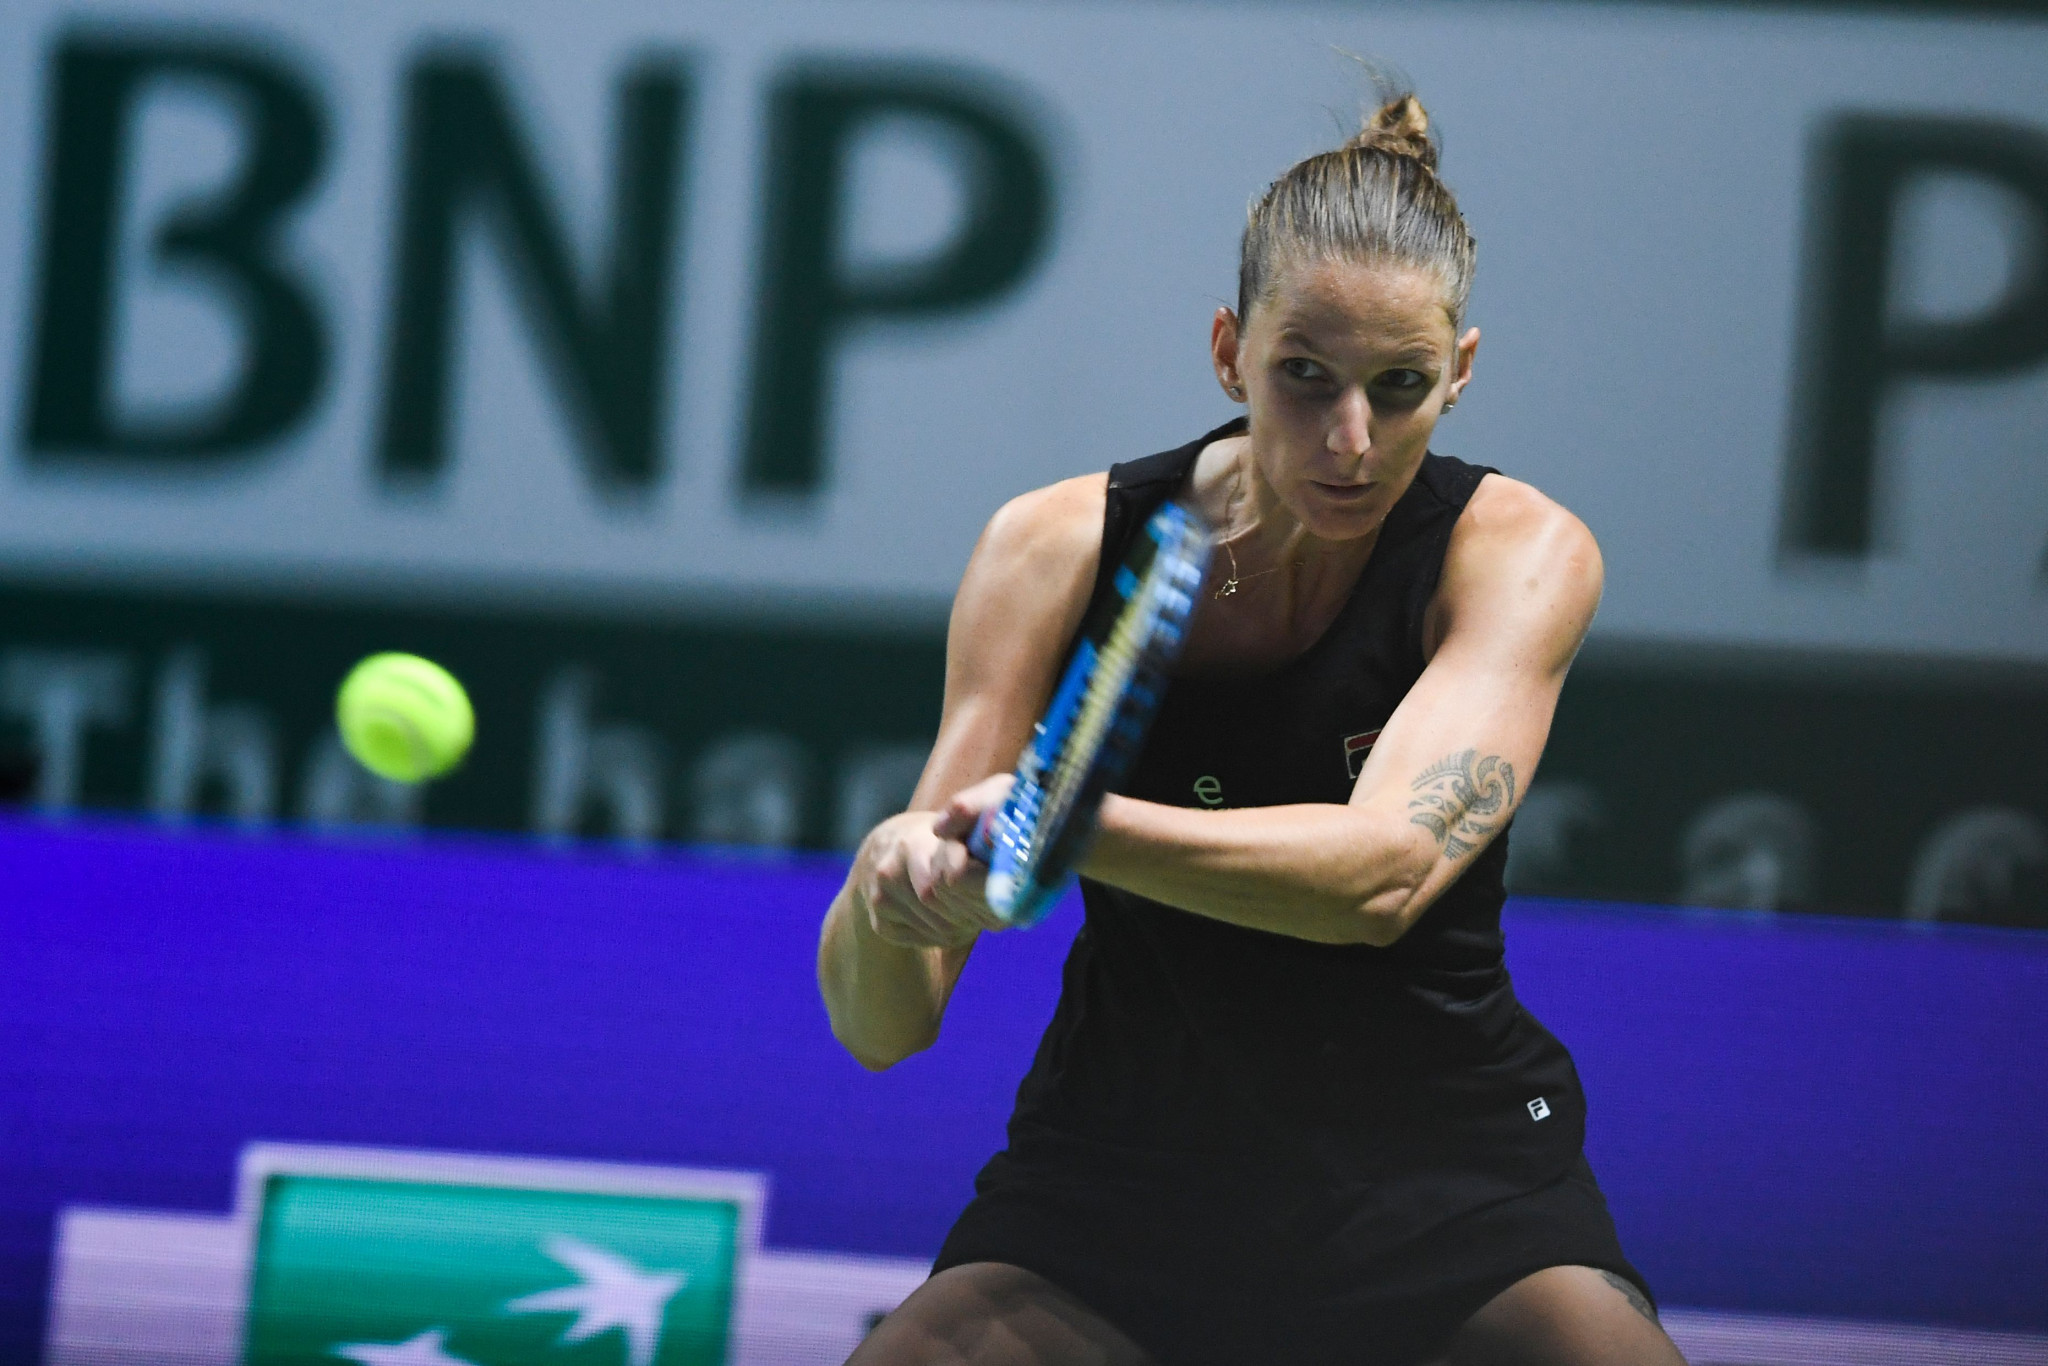 Karolína Plíšková progressed to the semi-finals with victory over Czech compatriot Petra Kvitová ©Getty Images